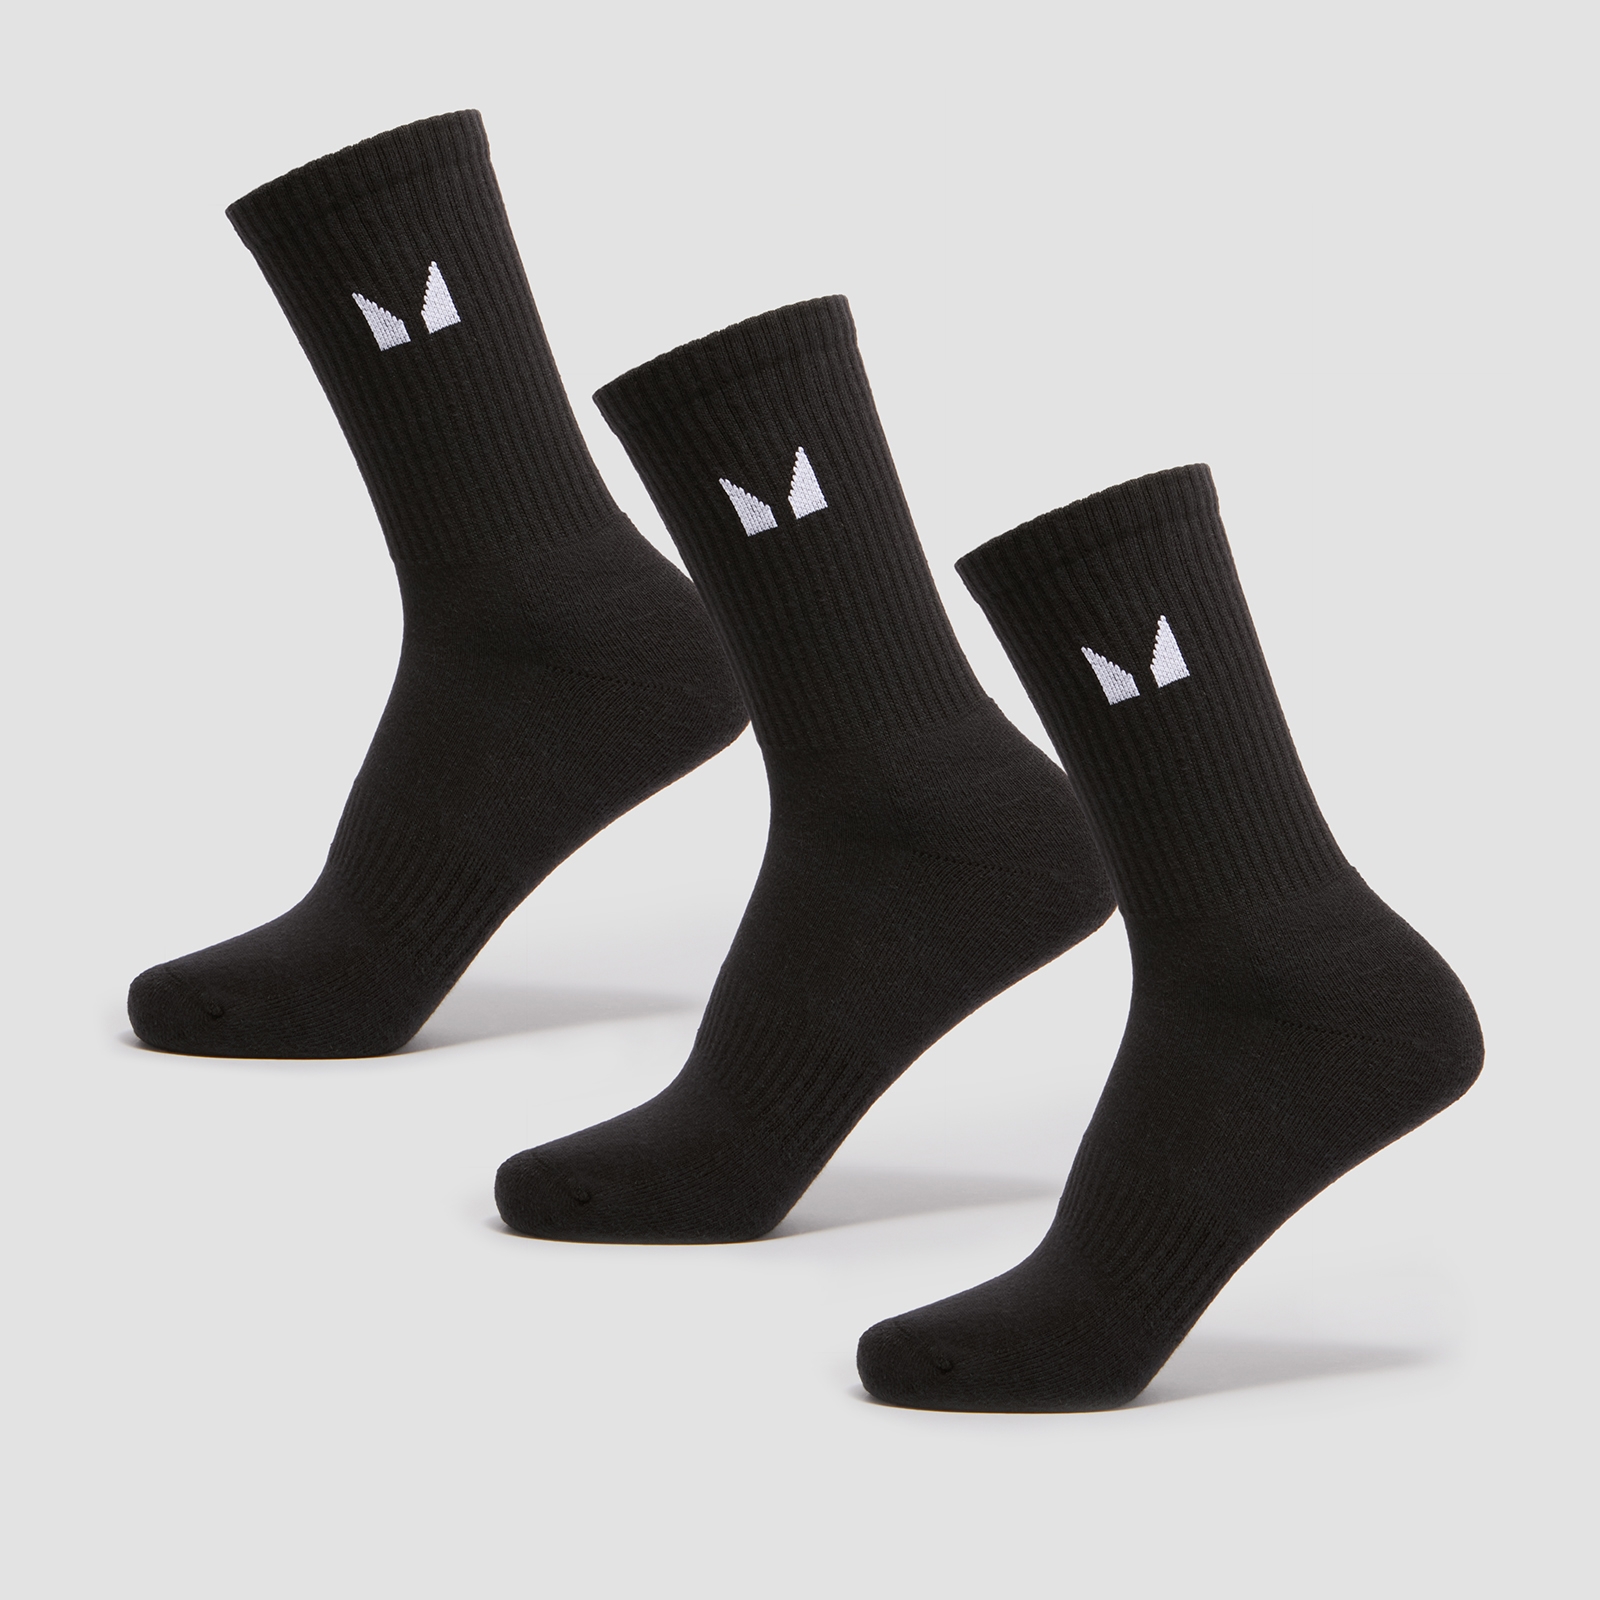 Image of MP Unisex Socks (3 Pack) - Black - UK 9-11